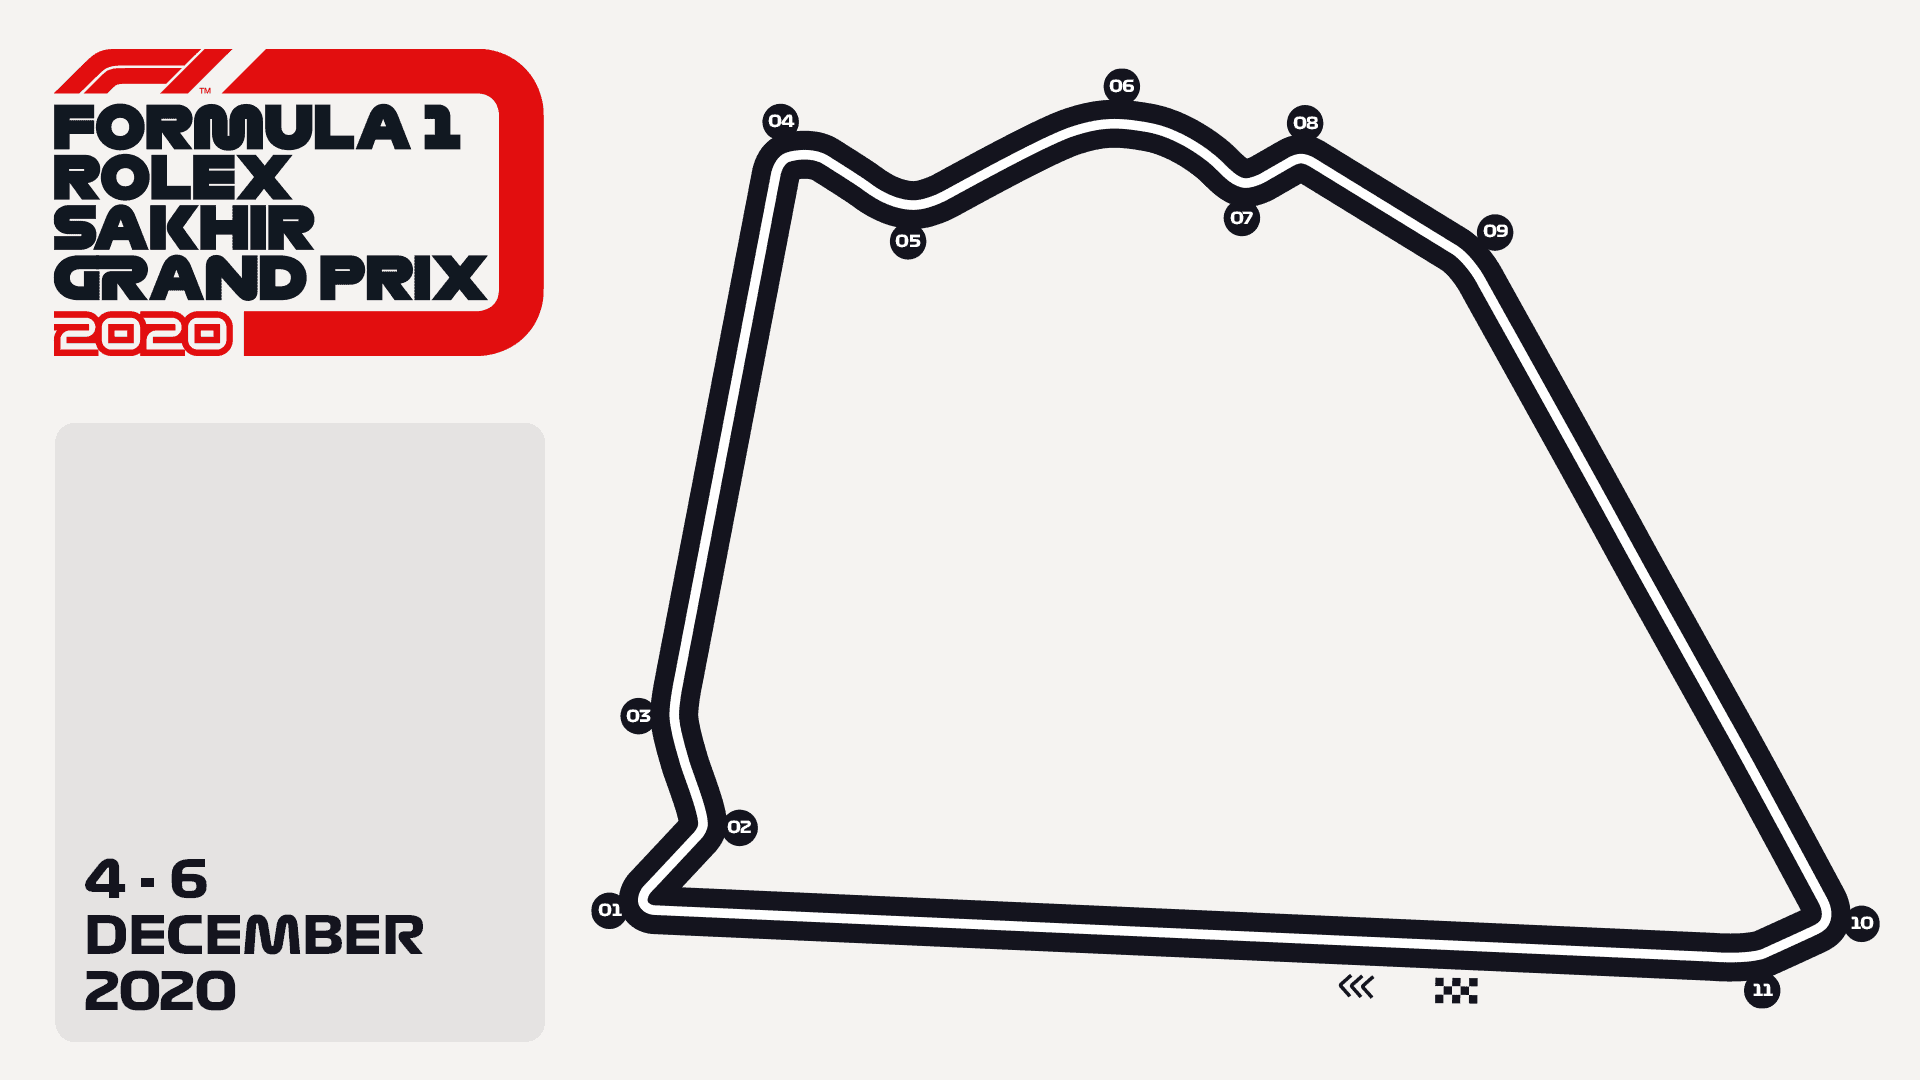 Sakhir Grand Prix Circuit